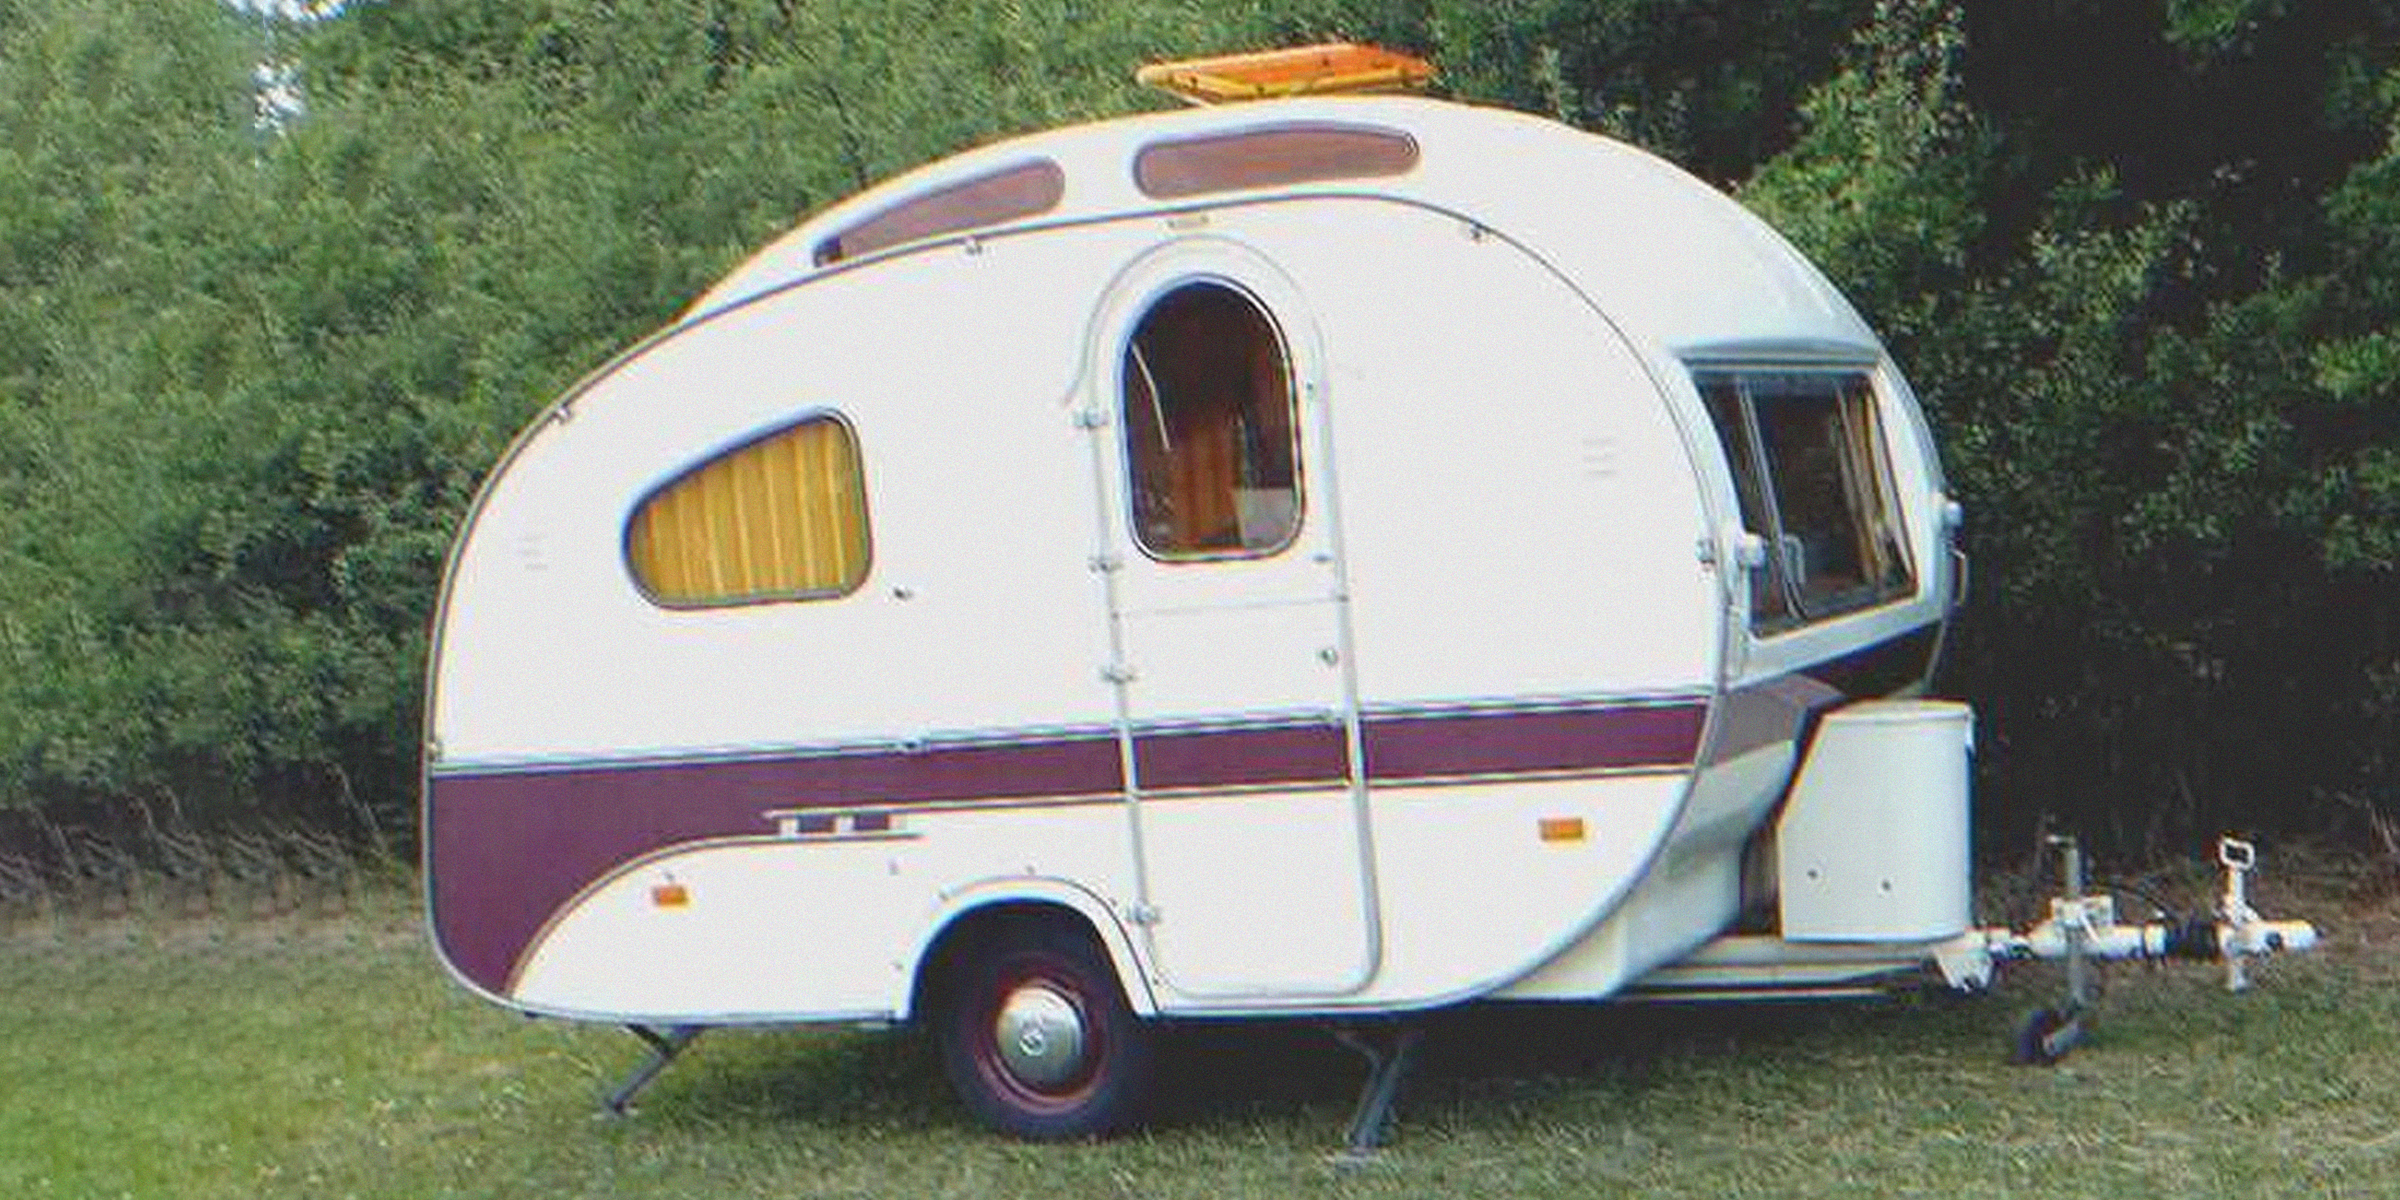 Ein Bild von einem Wohnwagen | Quelle: flickr.com/"Caravan" (CC BY-SA 2.0) von MGSpiller